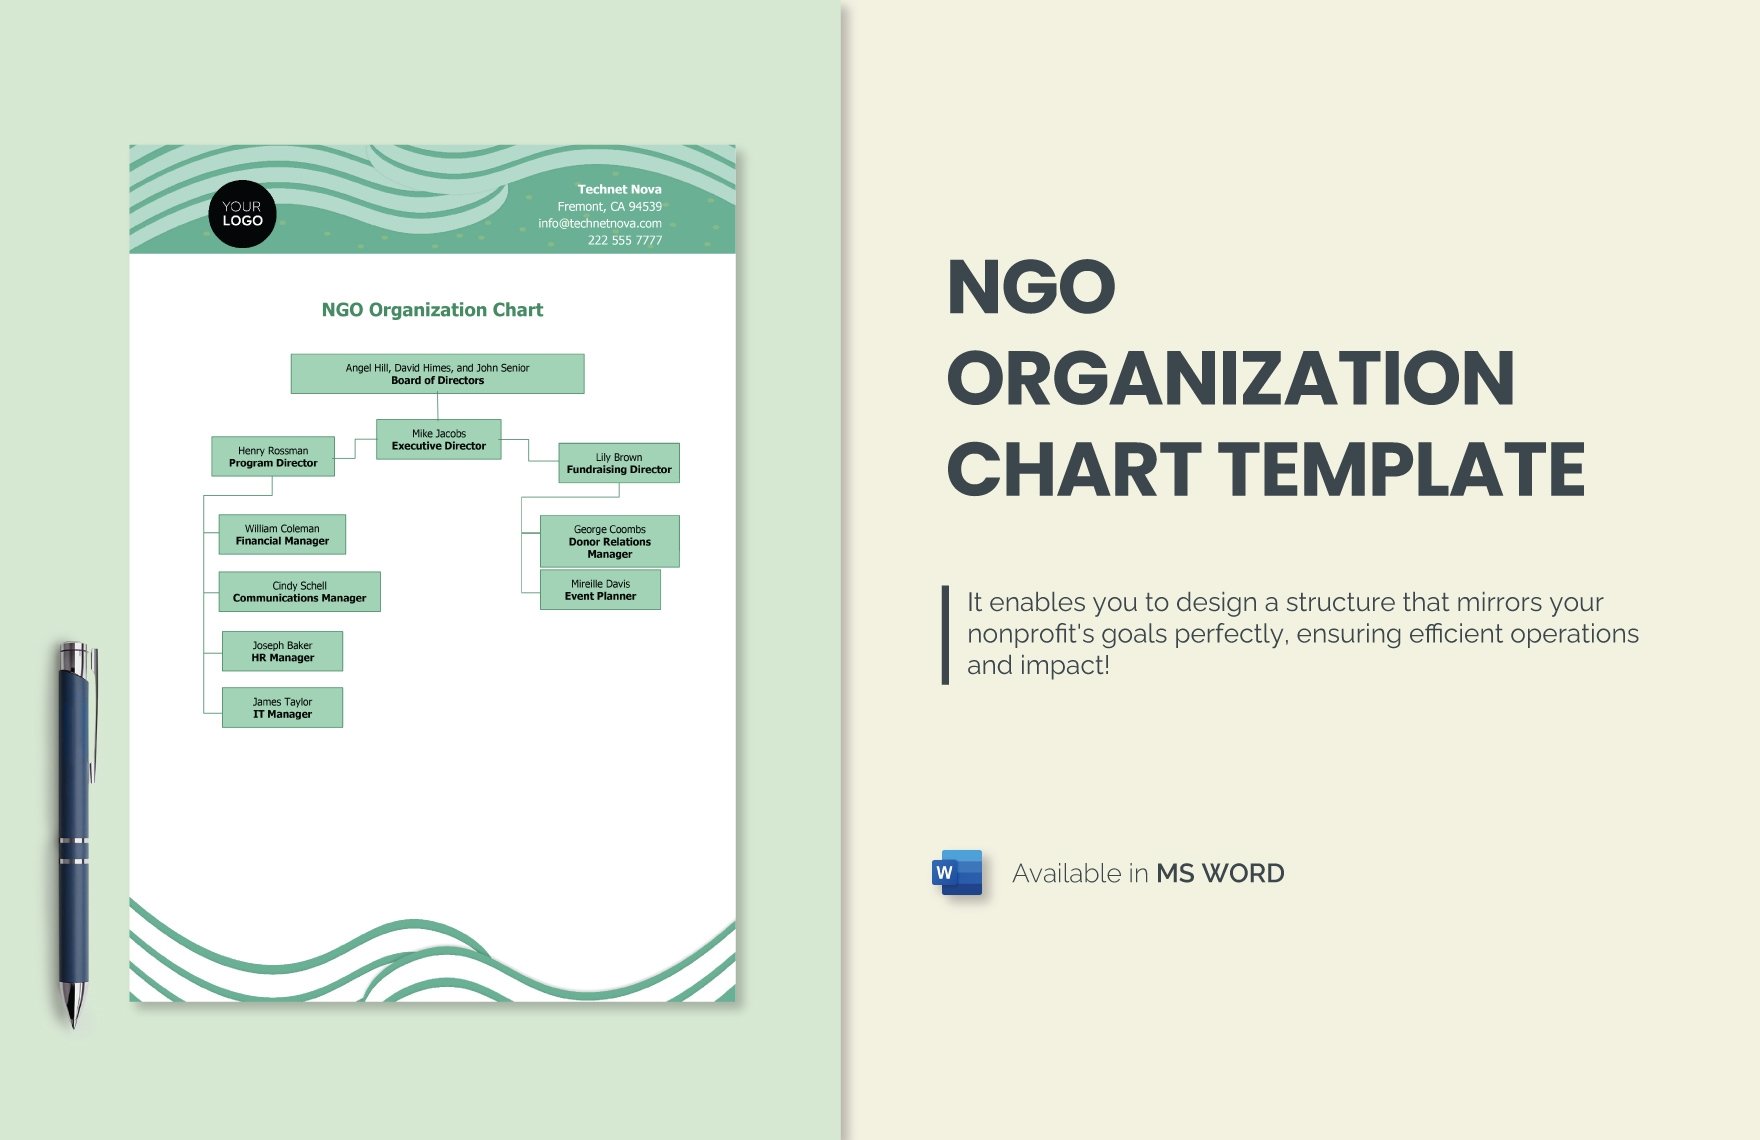 NGO Organization Chart Template